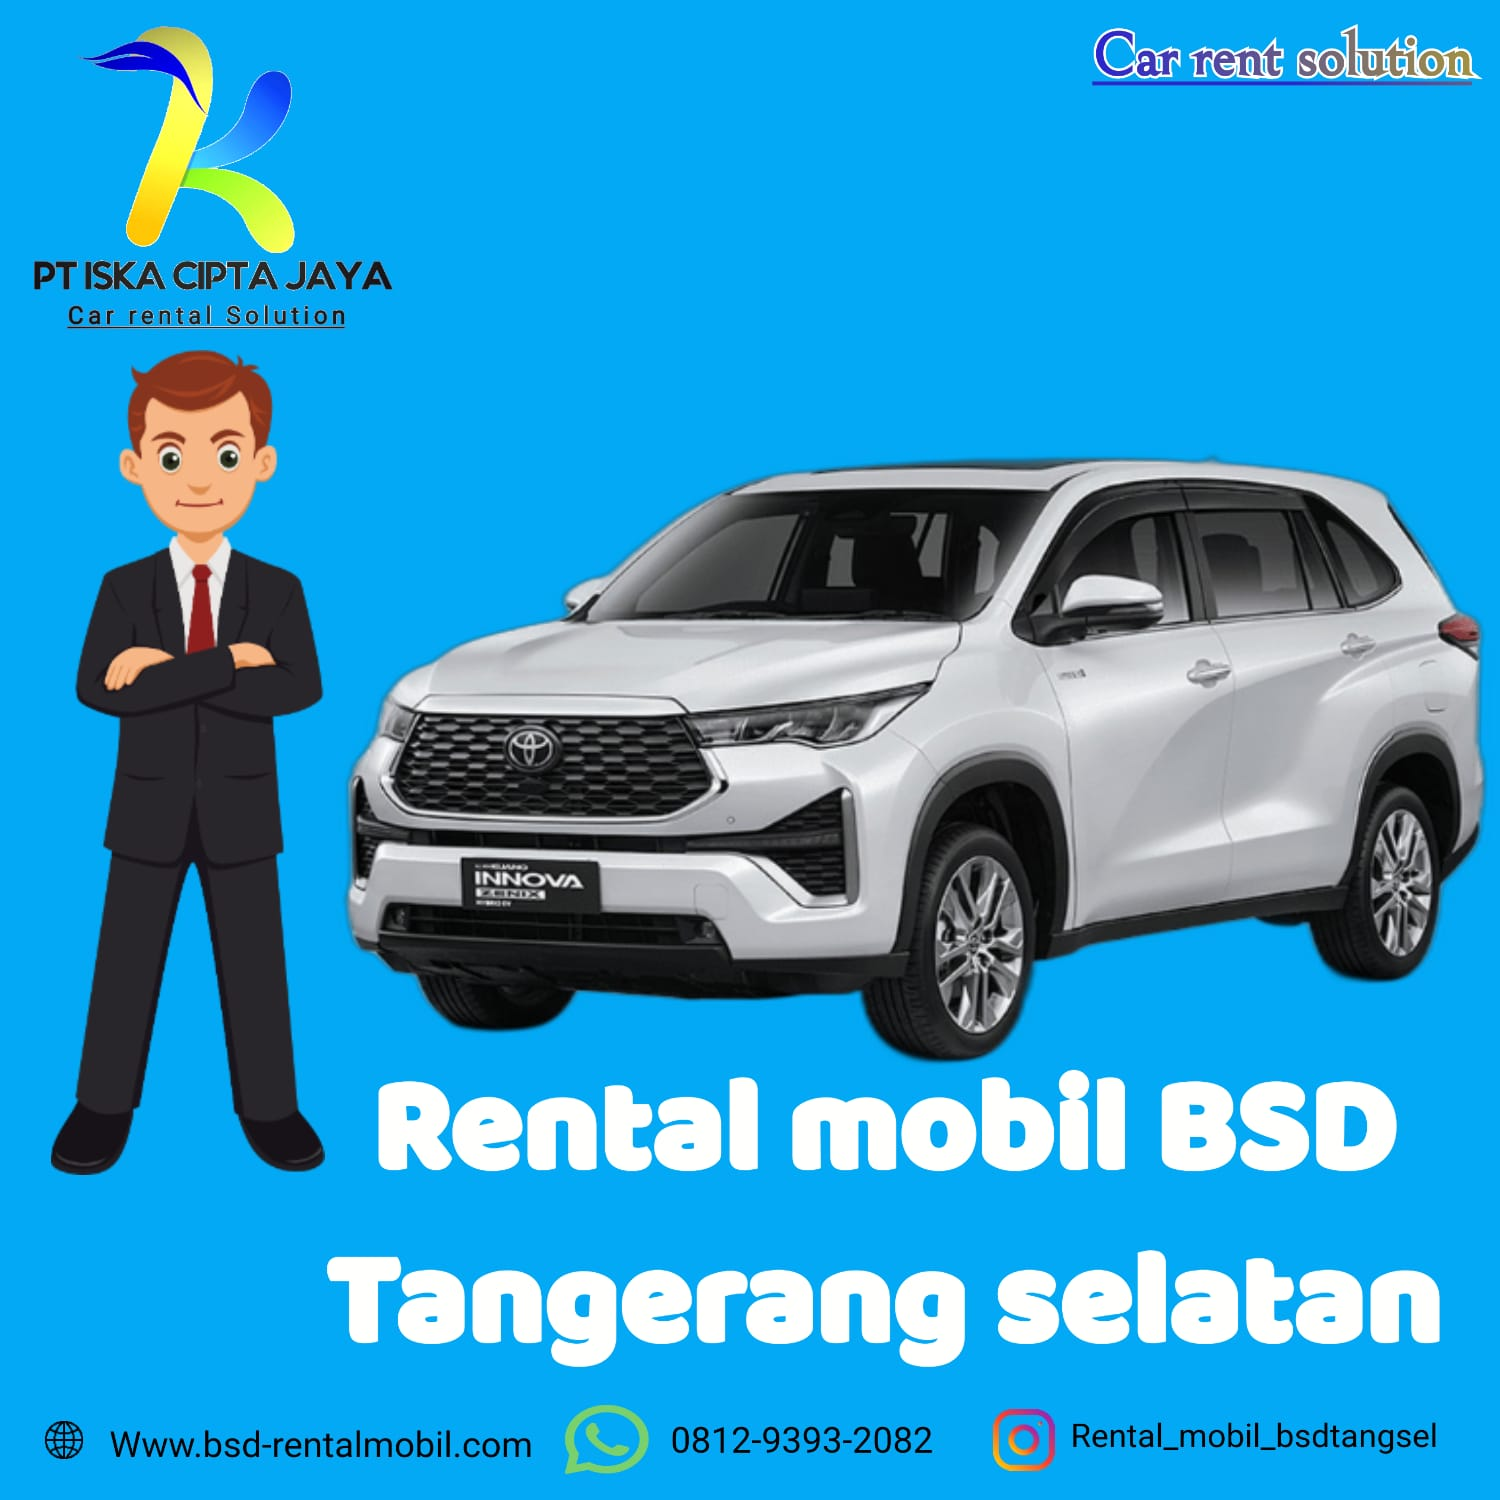 Rental Mobil BSD Tangerang Selatan, Kualitas Unggulan